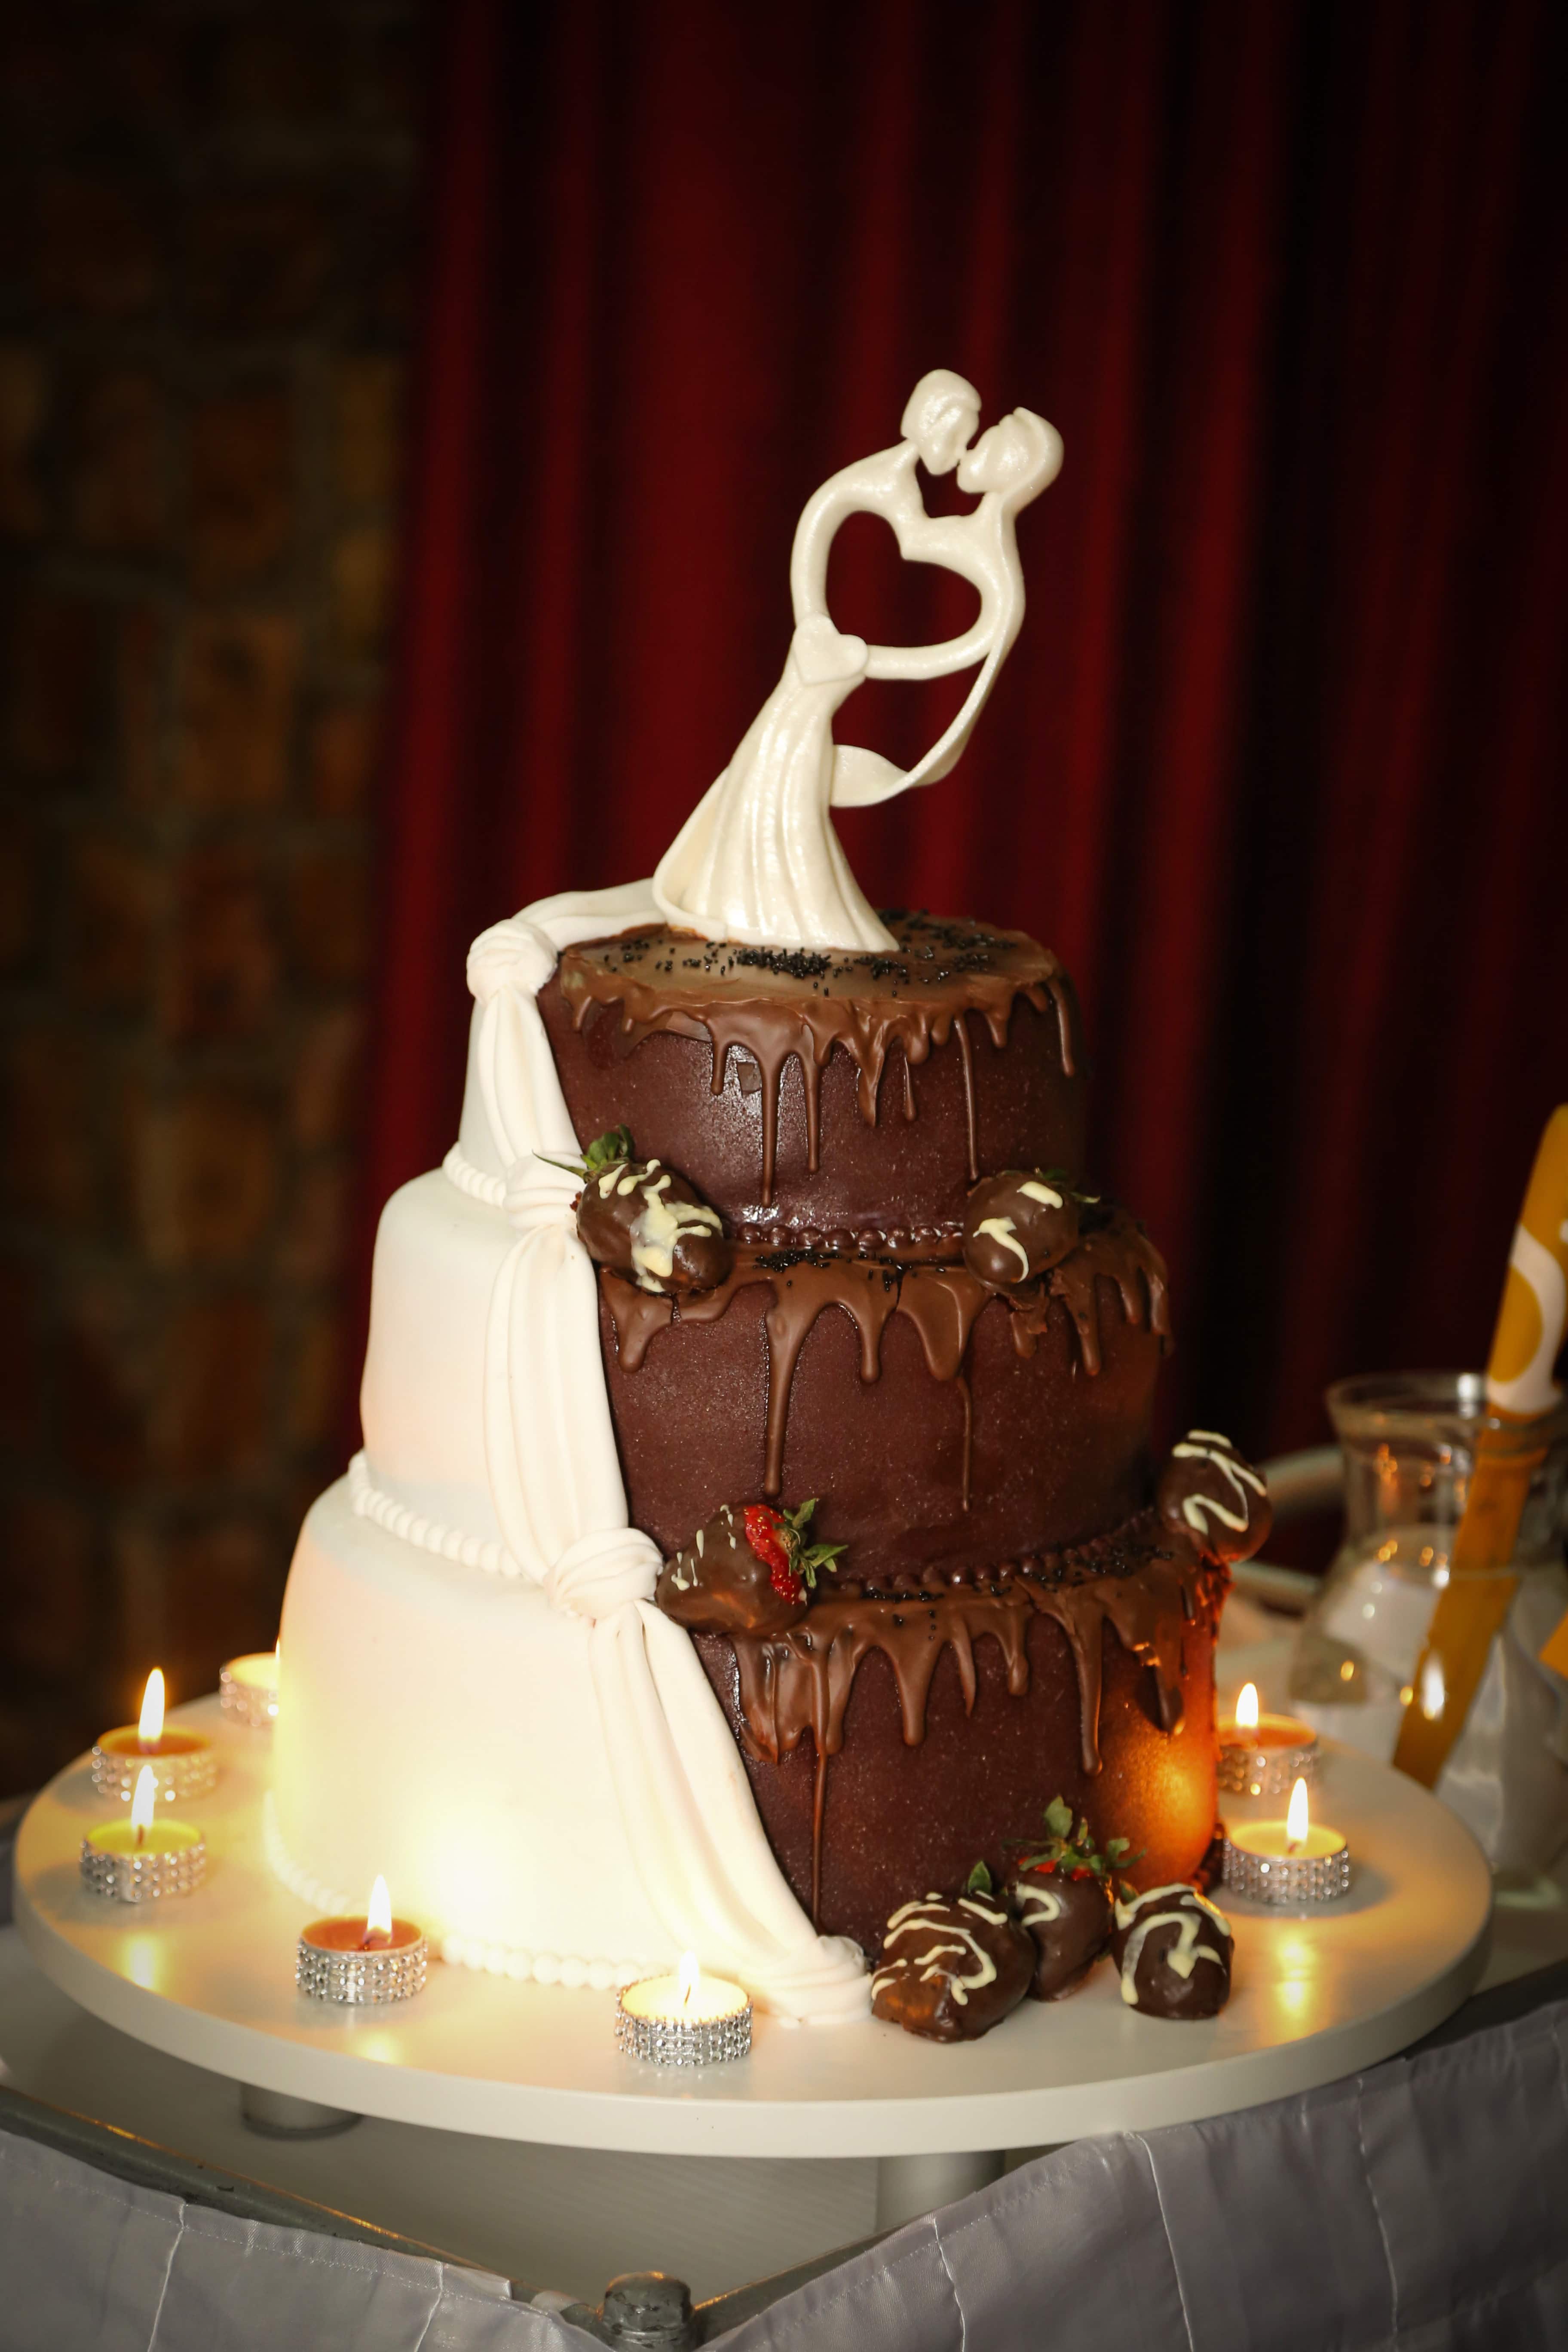 フリー写真画像 ロマンチックです キャンドル ウエディング ケーキ チョコレート ケーキ キャンドル 高級 チョコレート お祝い 結婚式 インテリア デザイン